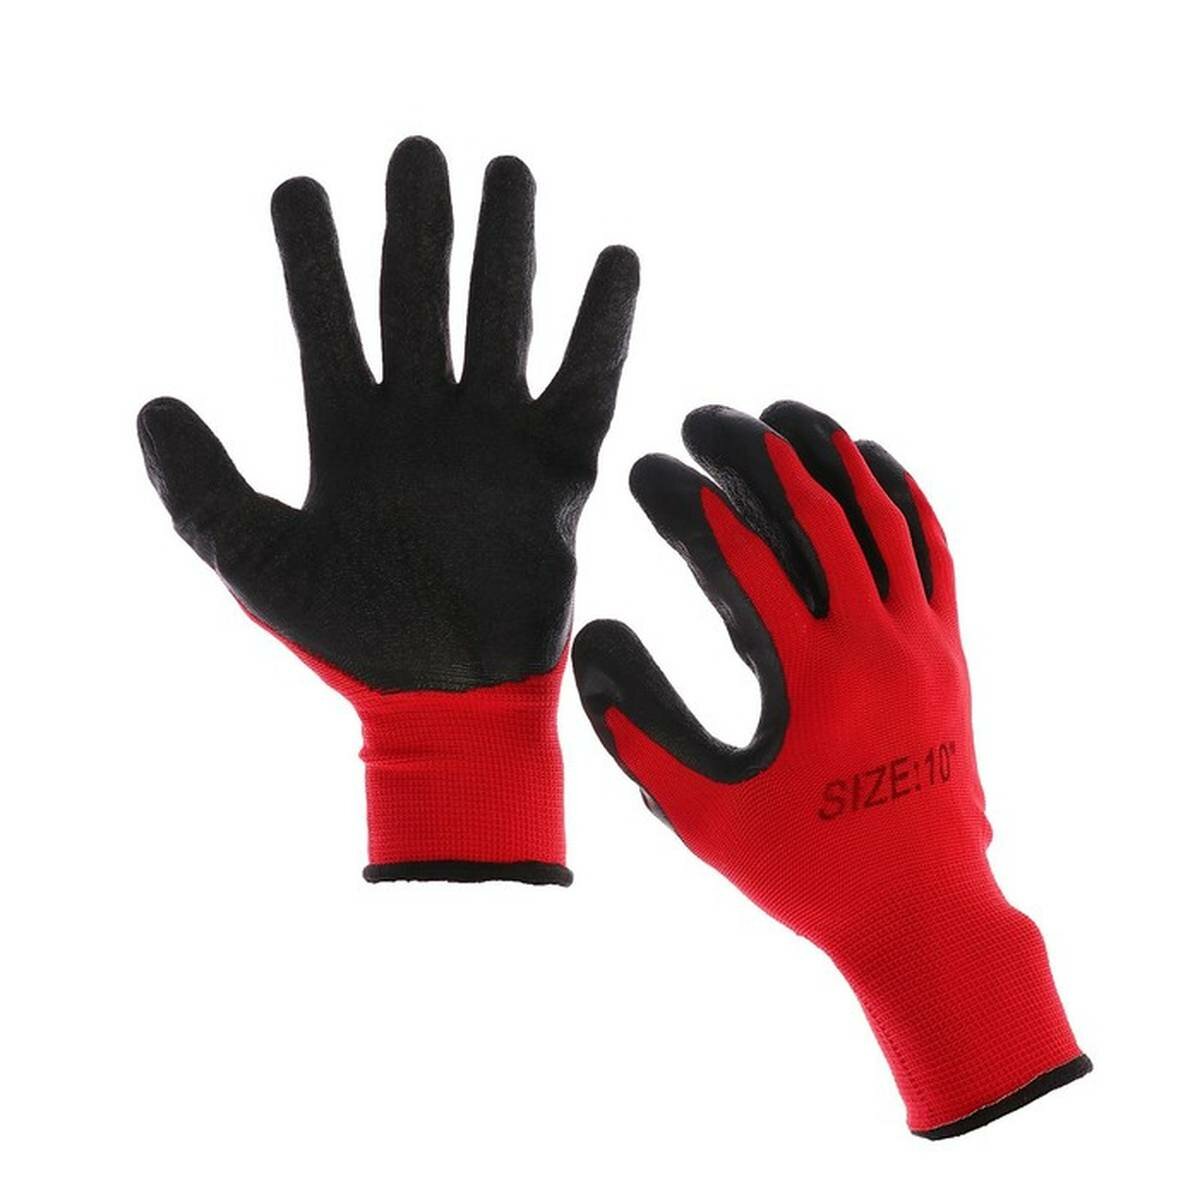 Перчатки хозяйственные Greengo - нейлоновые, с резиновым обливом, размер 10, чёрно-красные, 1 пара